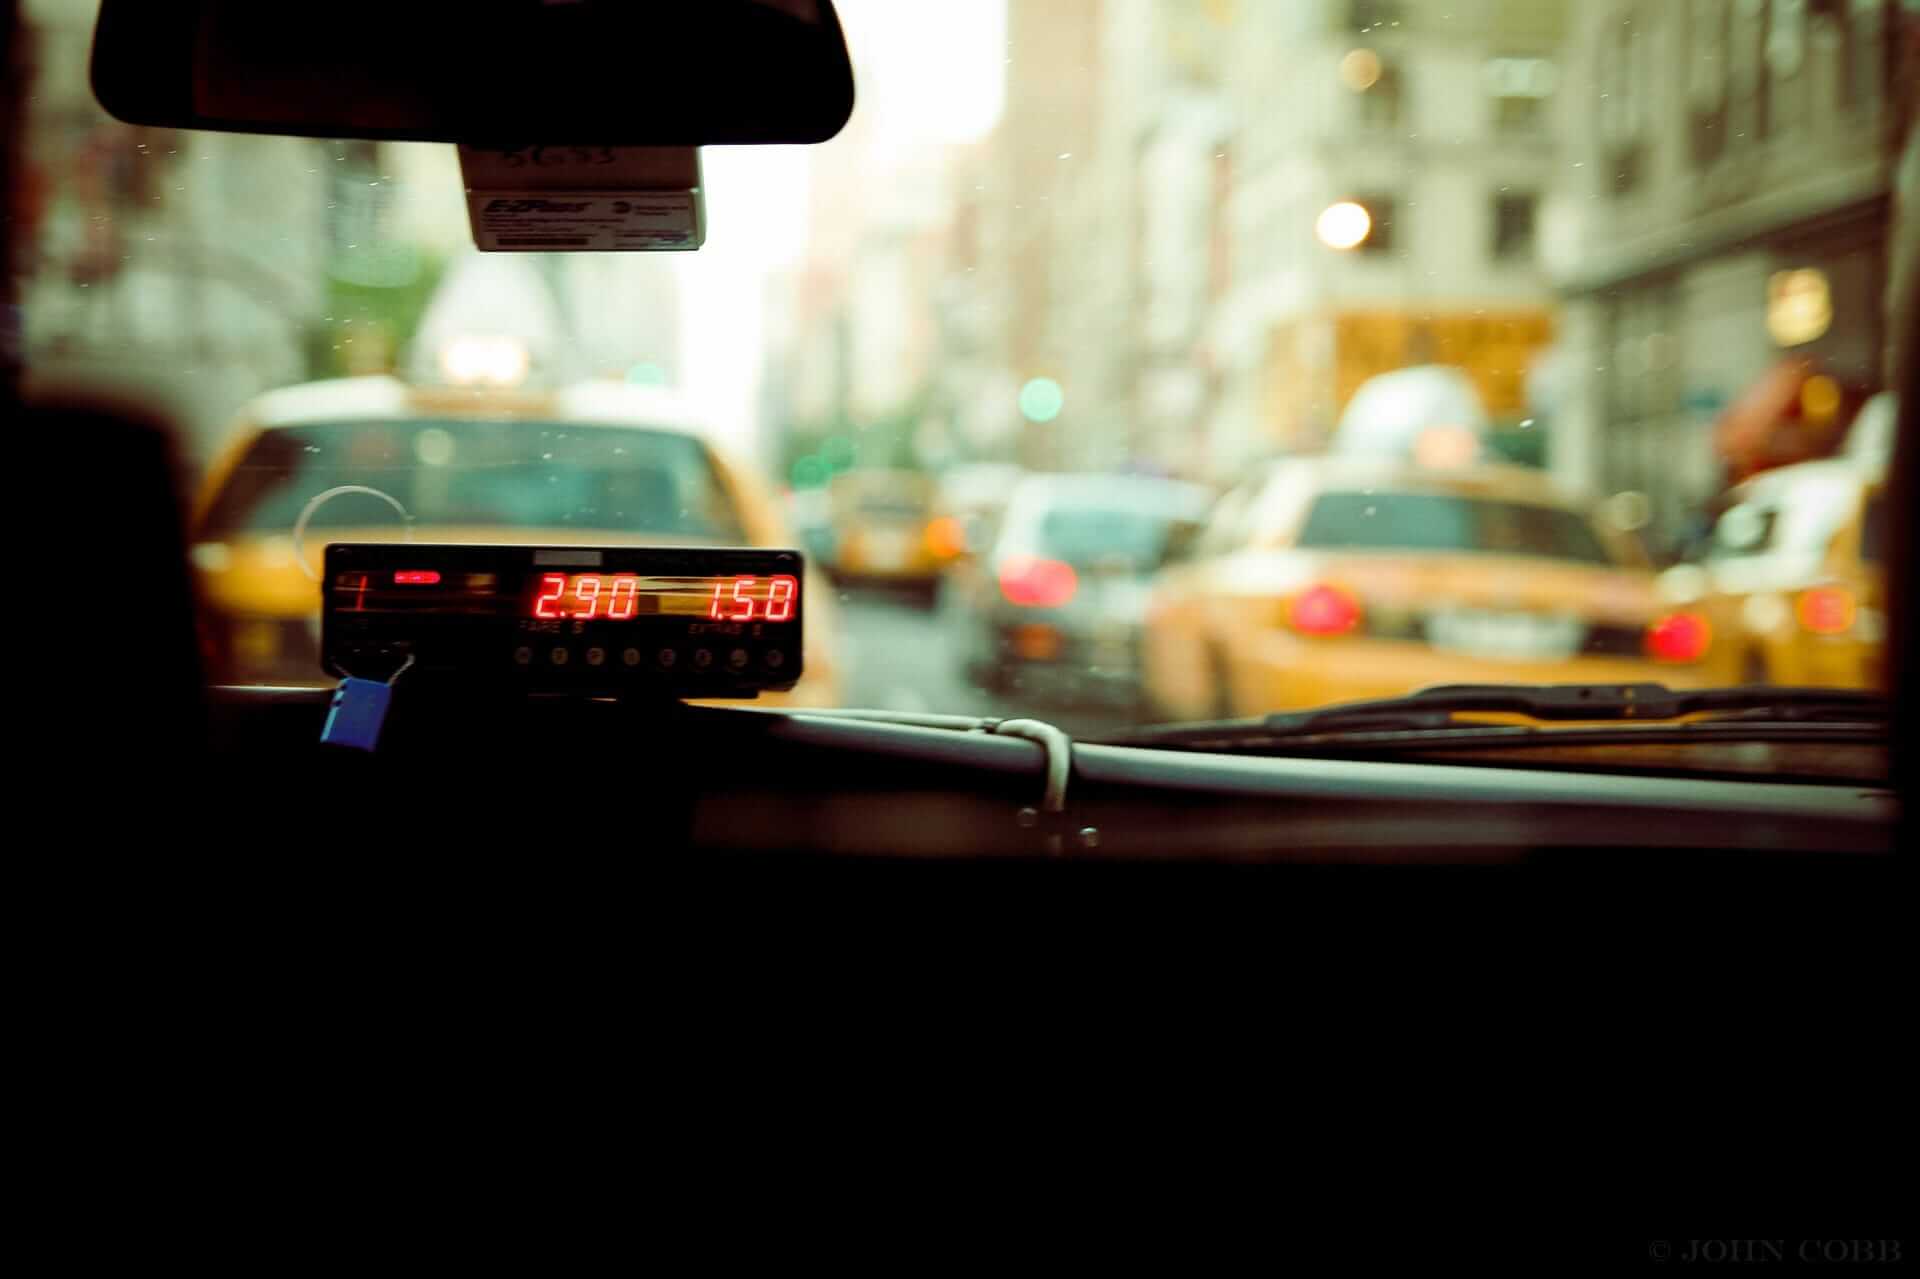 Cab rides